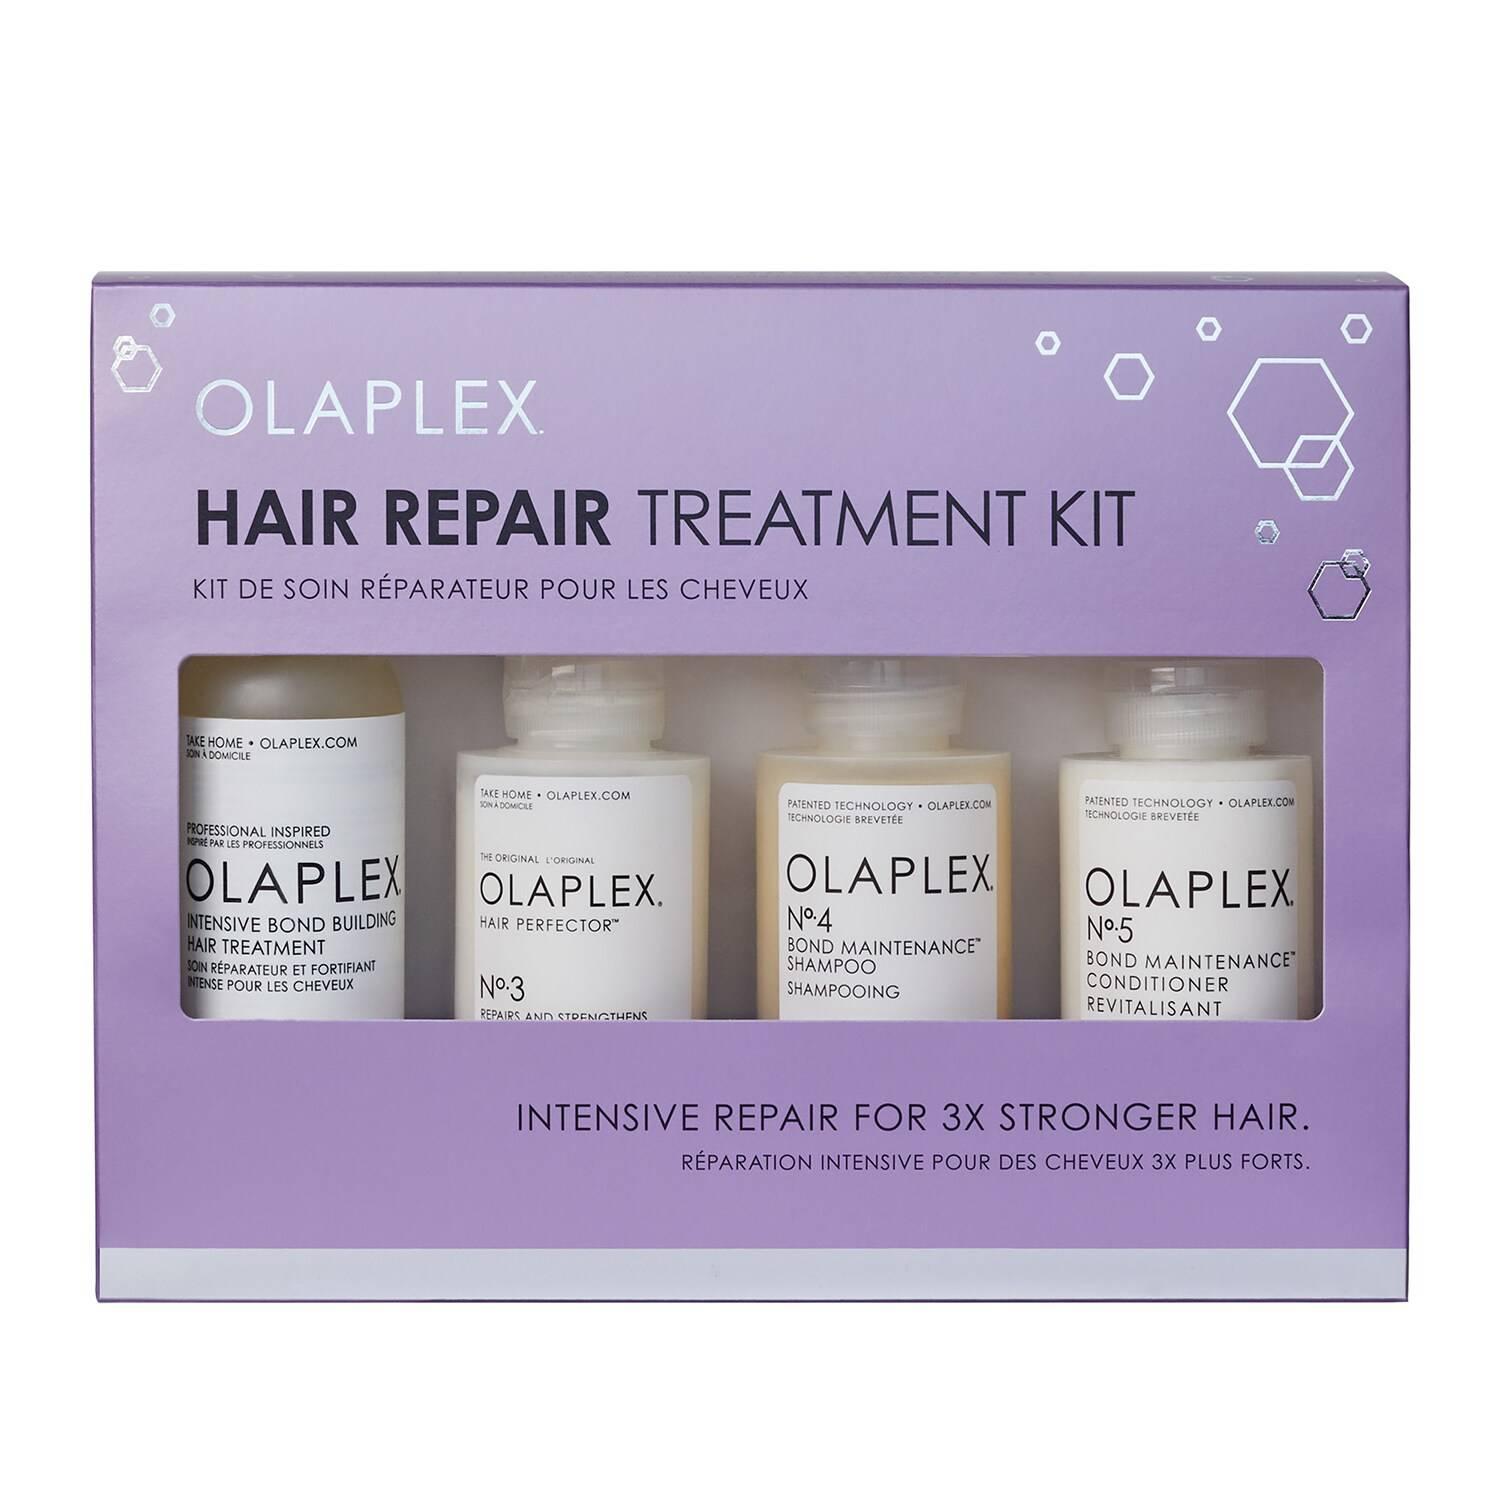 Olaplex Hair Repair Treatment Kit Sephora Uk